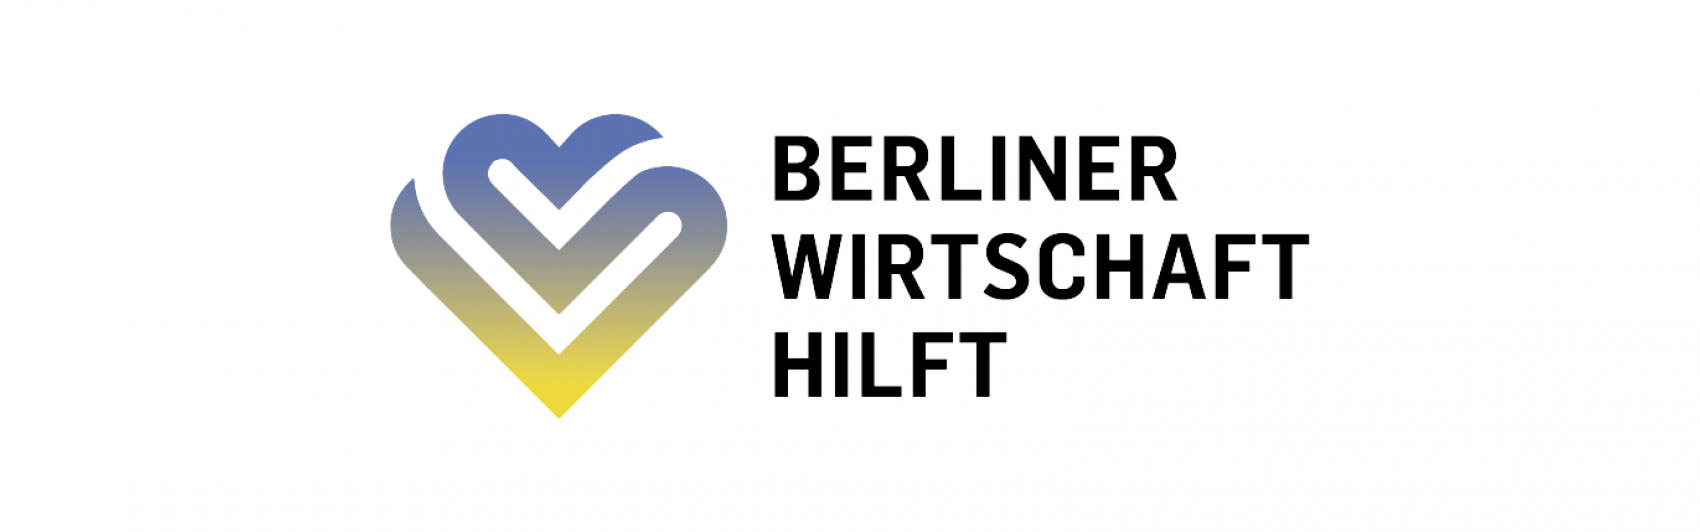 #BerlinerWirtschaftHilft